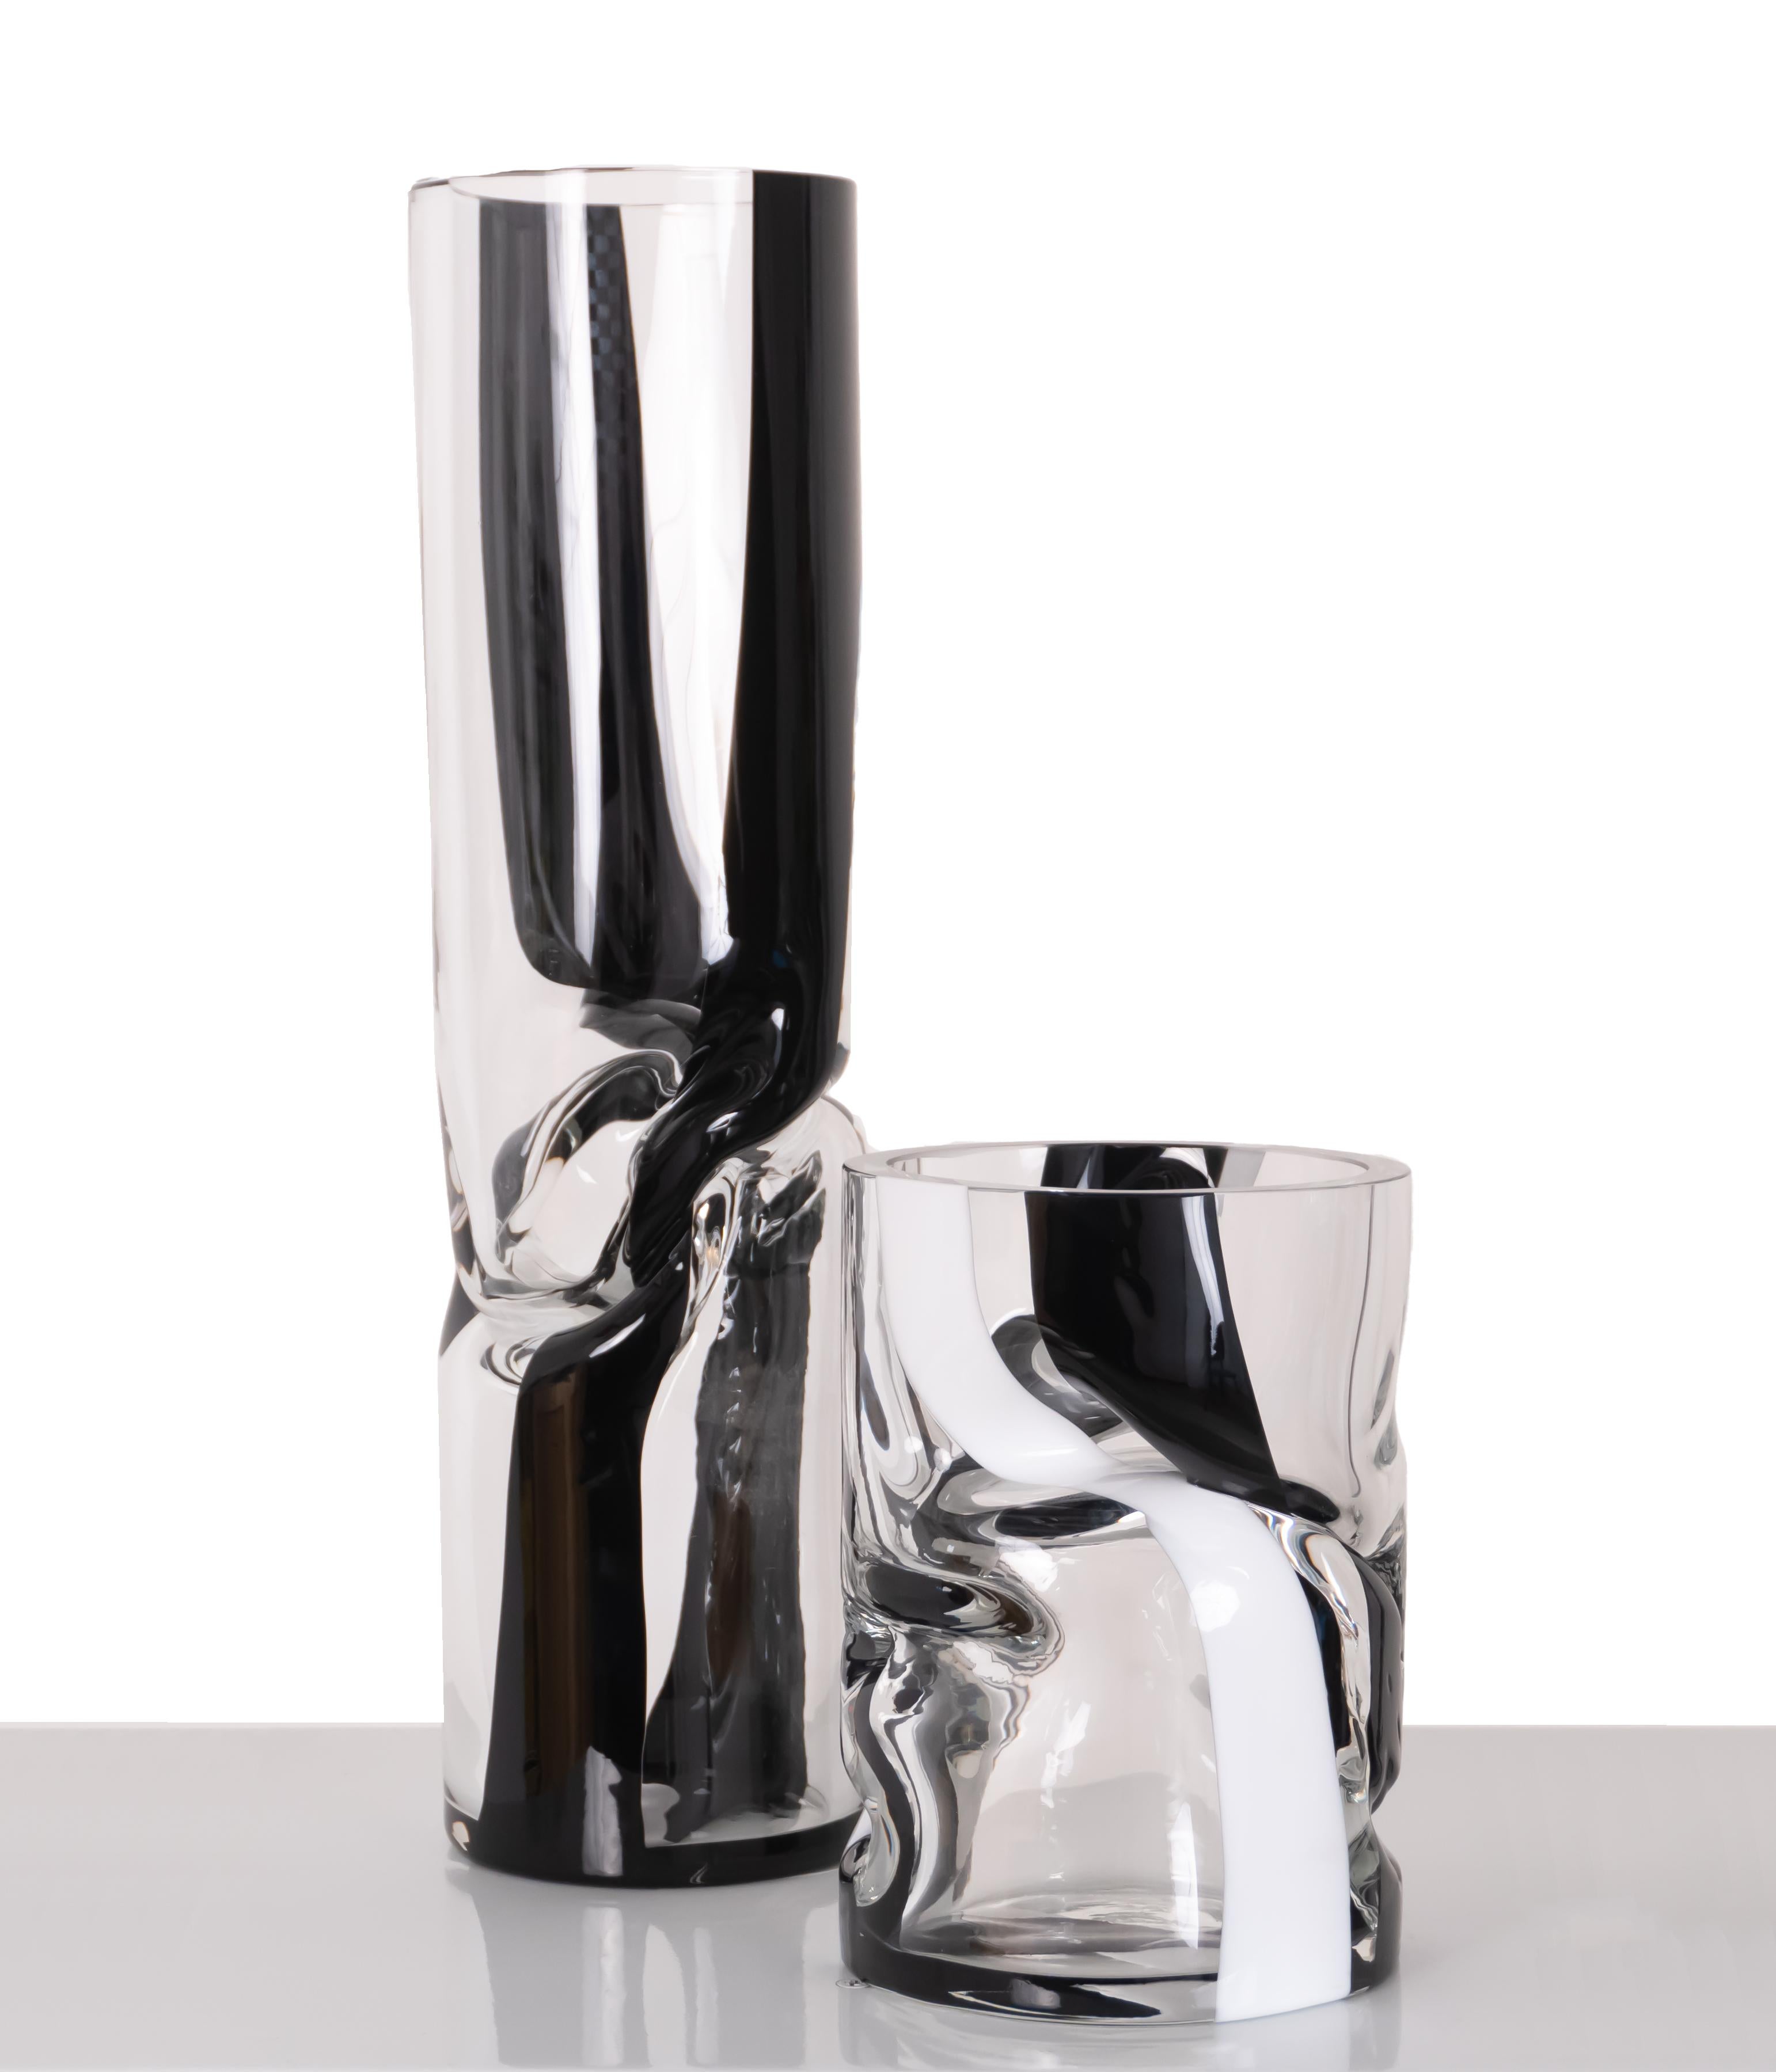 Die Kombination von Schwarz und Weiß in unserer kleinen gestreiften Crushed-Vase bringt den Kontrast maximal zur Geltung. Dieser zeitlose Mix lässt sich wunderbar mit kräftigen oder sanften Tönen kombinieren.

Während des Glasblasens werden die